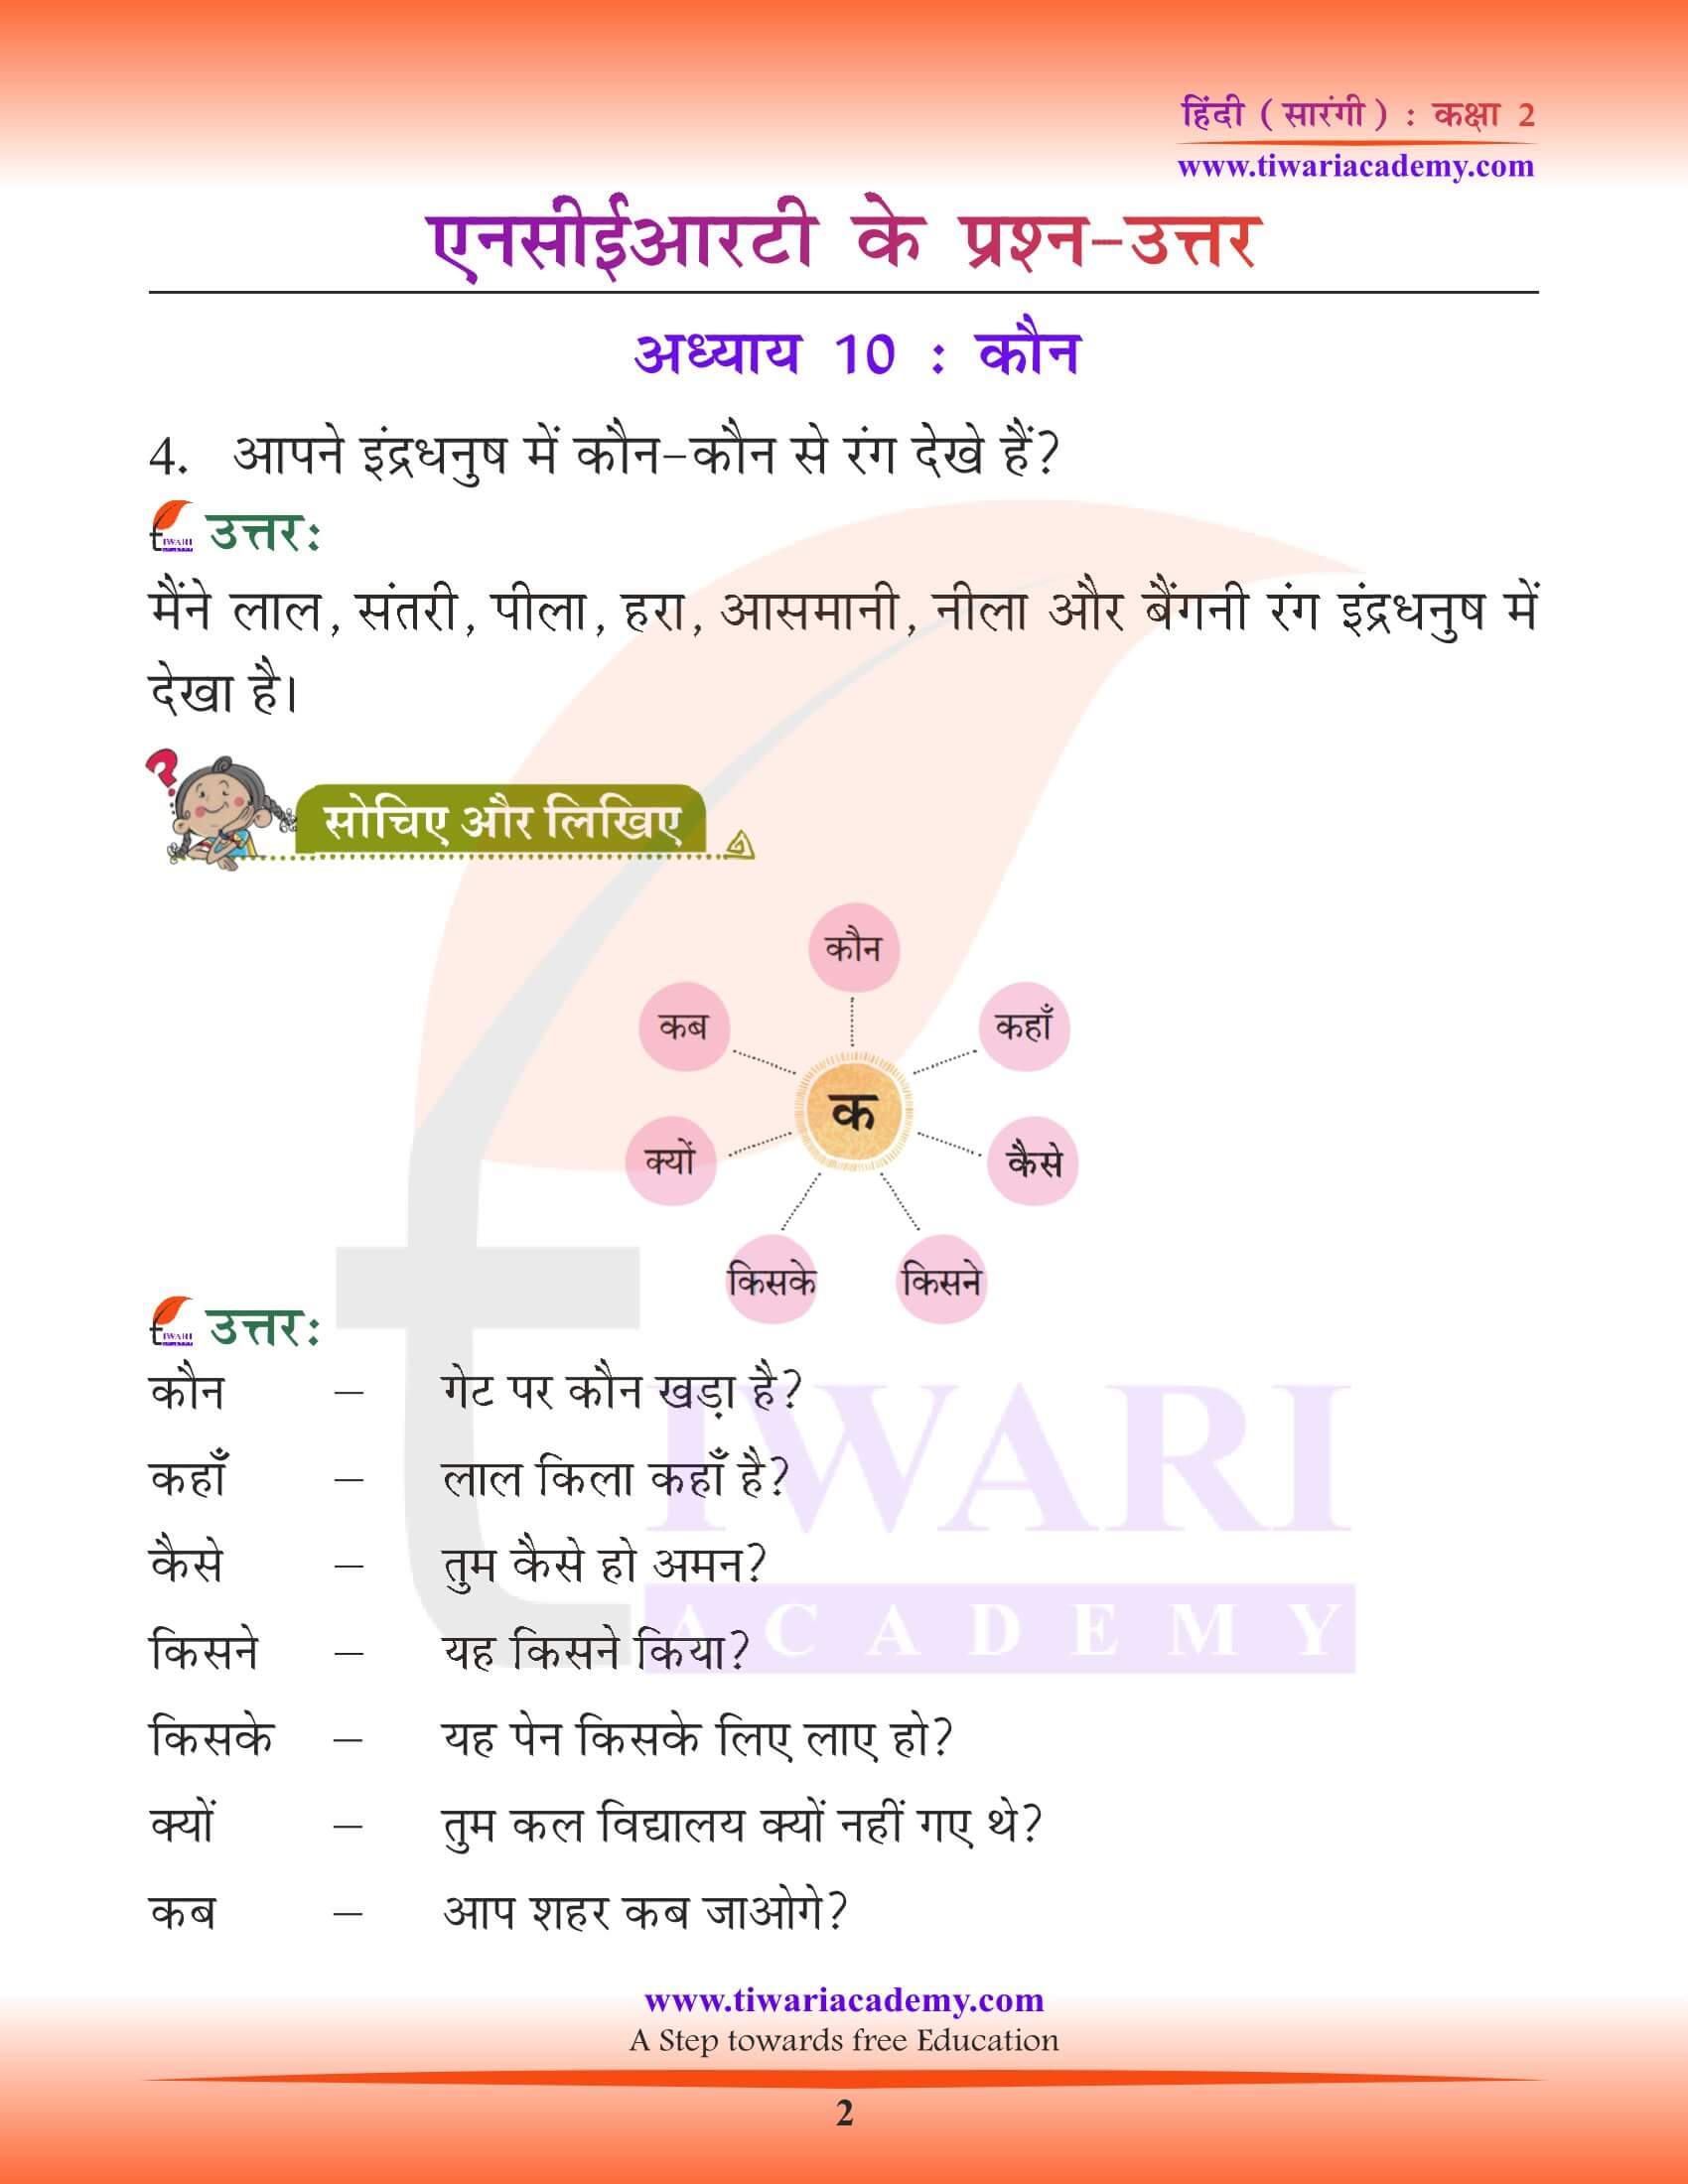 कक्षा 2 हिंदी सारंगी अध्याय 10 कौन